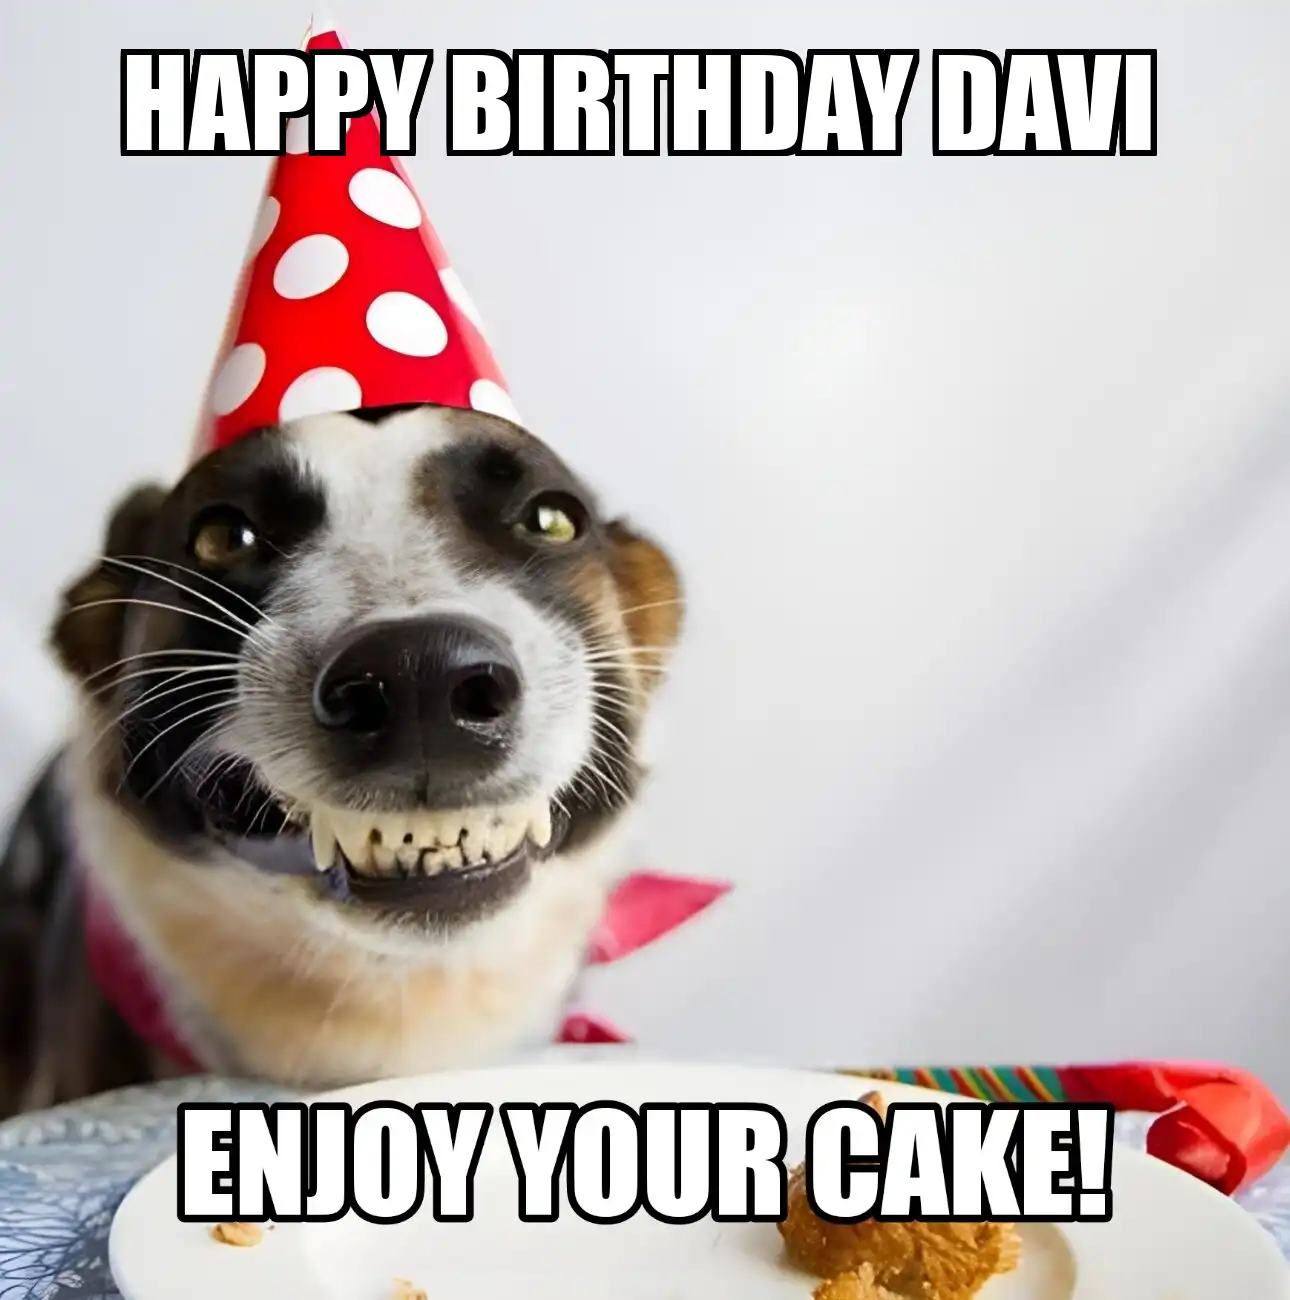 Happy Birthday Davi Enjoy Your Cake Dog Meme